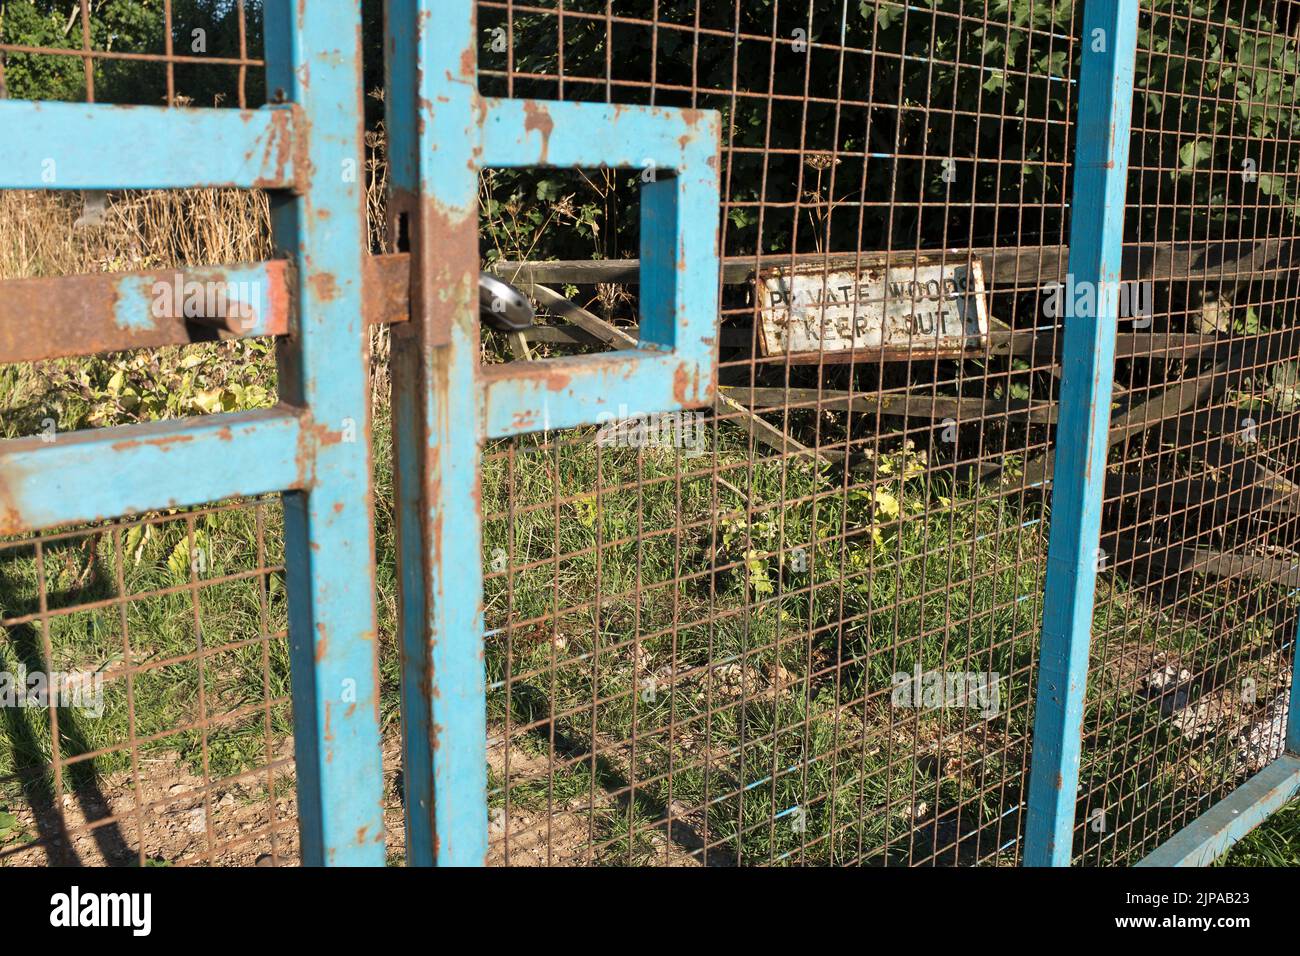 dh Fence gates WOODS YORKSHIRE Madera privada Mantener fuera señal seguridad acero malla metálica puerta evitar acceso alambre propiedad escrito bosque Foto de stock